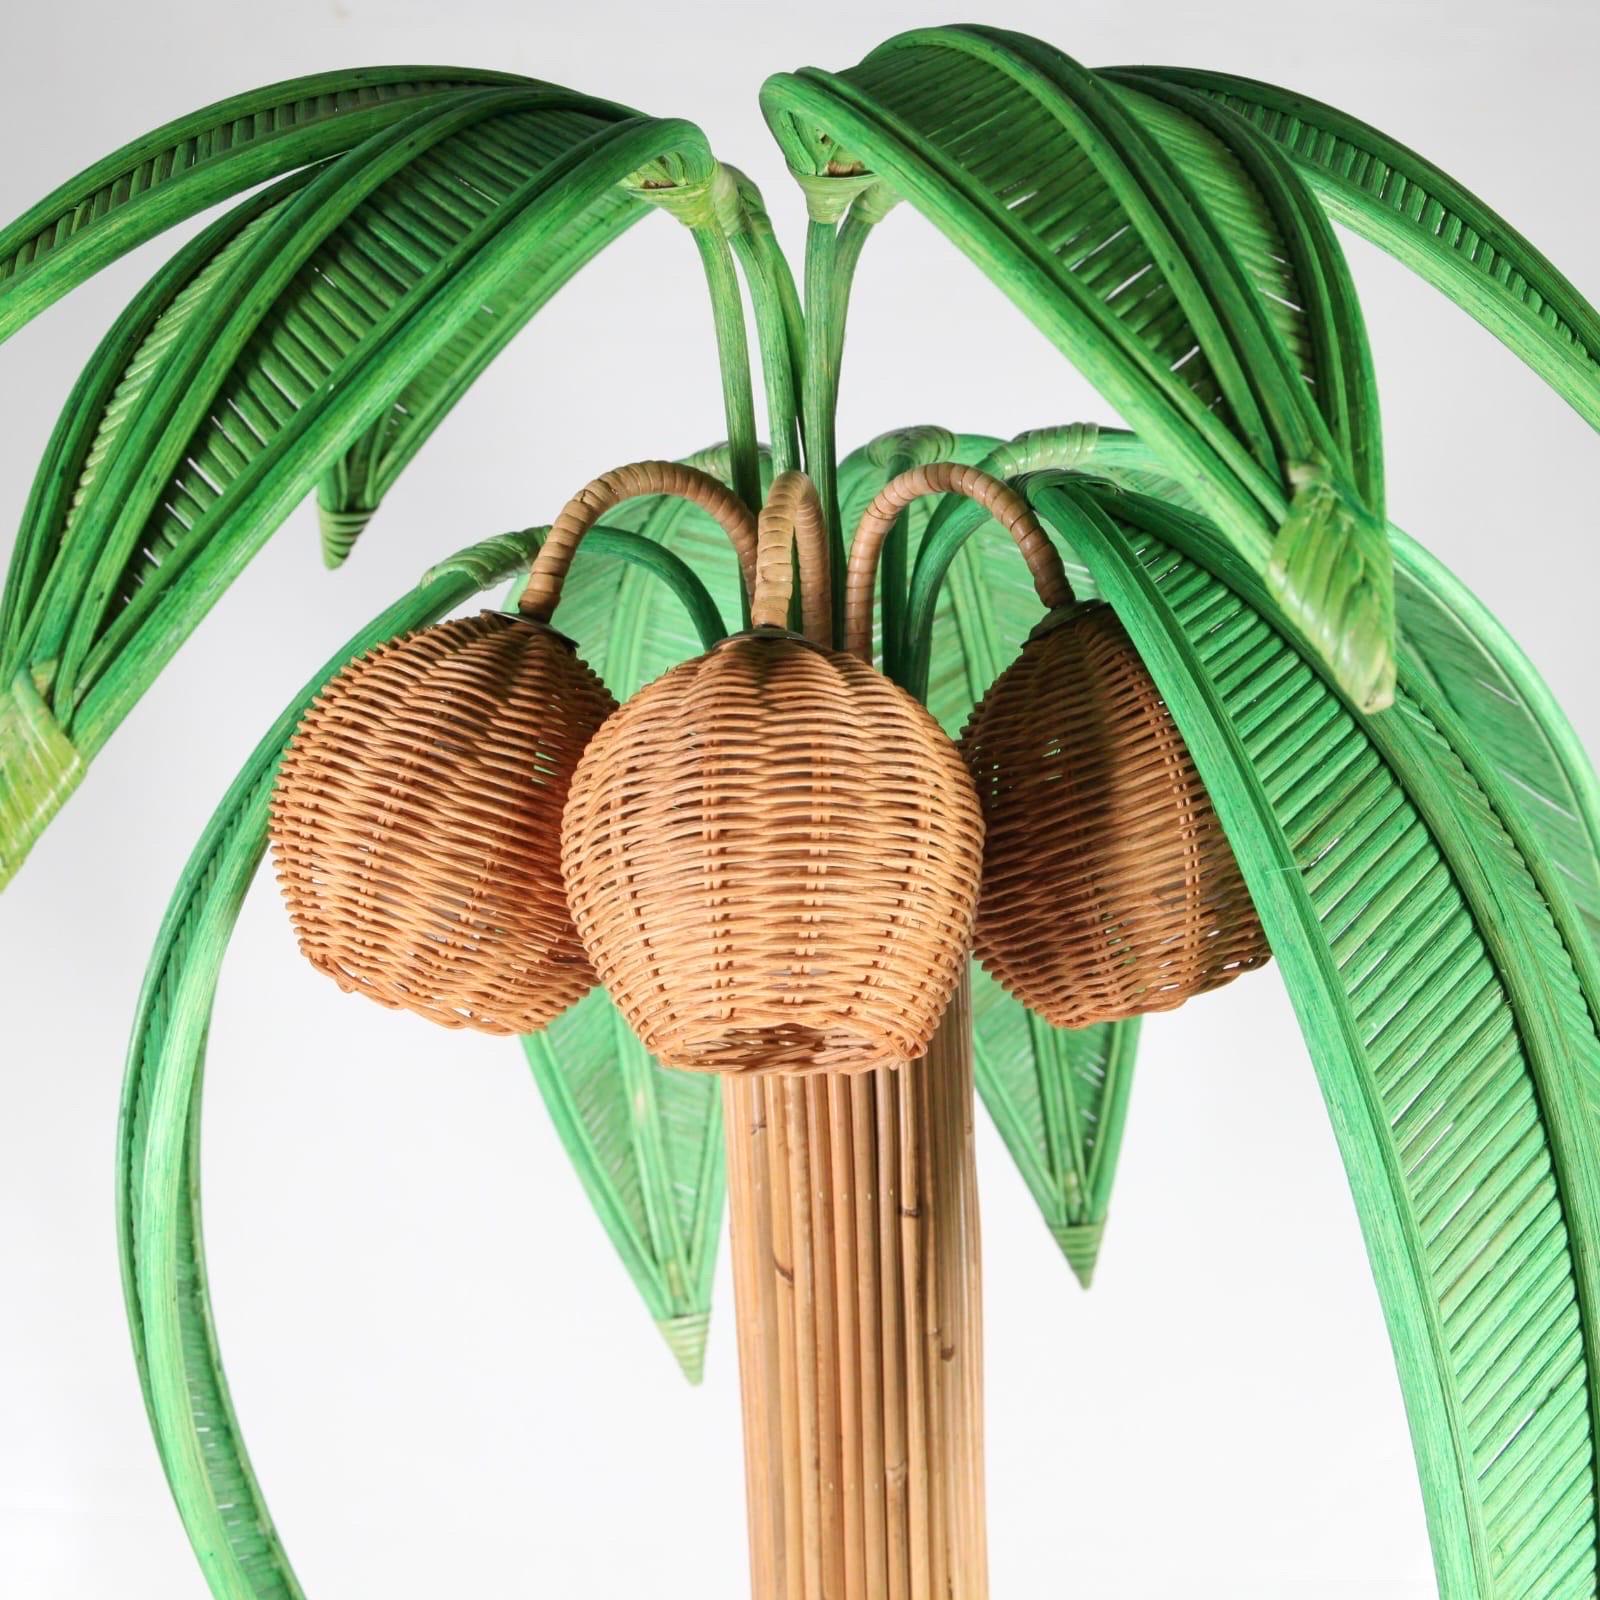 Lampadaire très décoratif avec 10 palmes vertes orientables et 3 lumières dans les noix de coco.
La qualité est excellente, car tout est fait à la main avec beaucoup de minutie.
Excellent état.